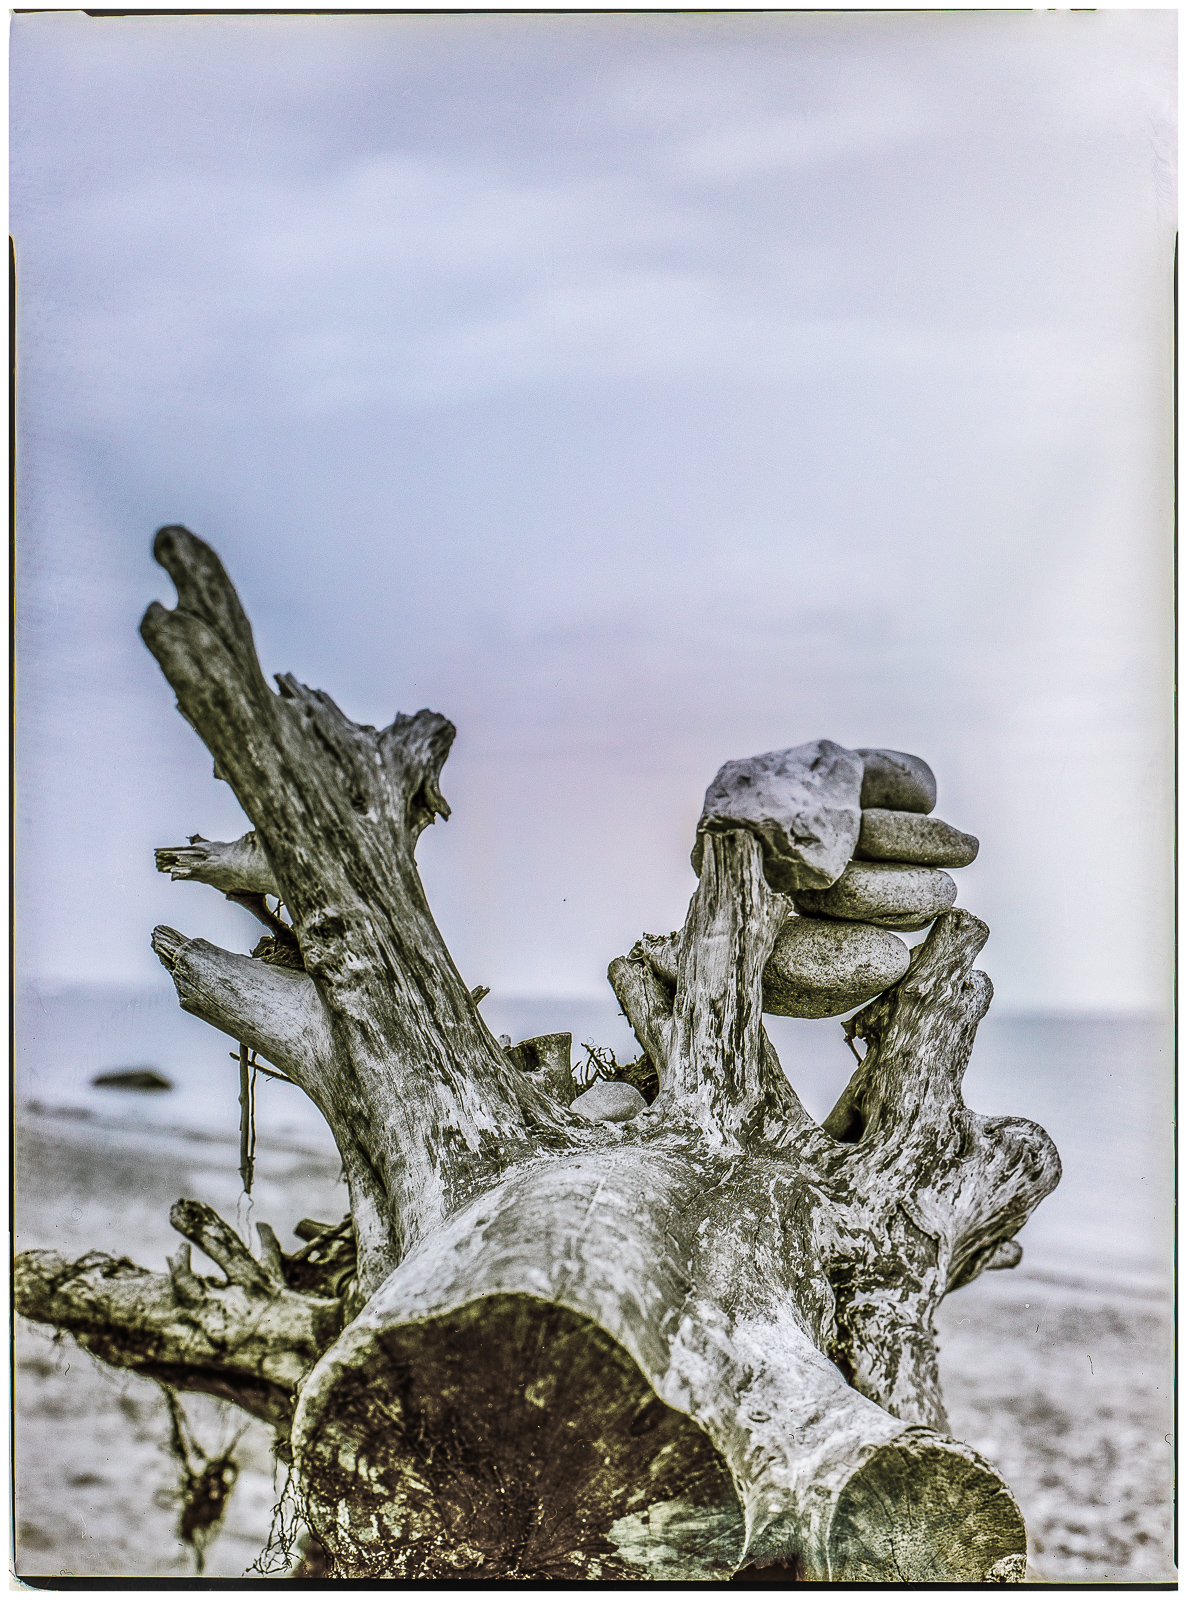 HochformatFoto einer BaumWurzel, die ohne Rinde am Strand liegt. Zwischen zwei WurzelAusläufern hat jemand eine SteinPyramide gestapelt. Hinten unscharf das Meer und der Himmel. Das Bild ist schwarz-weiß mit leichter blau/brauner Tonung.